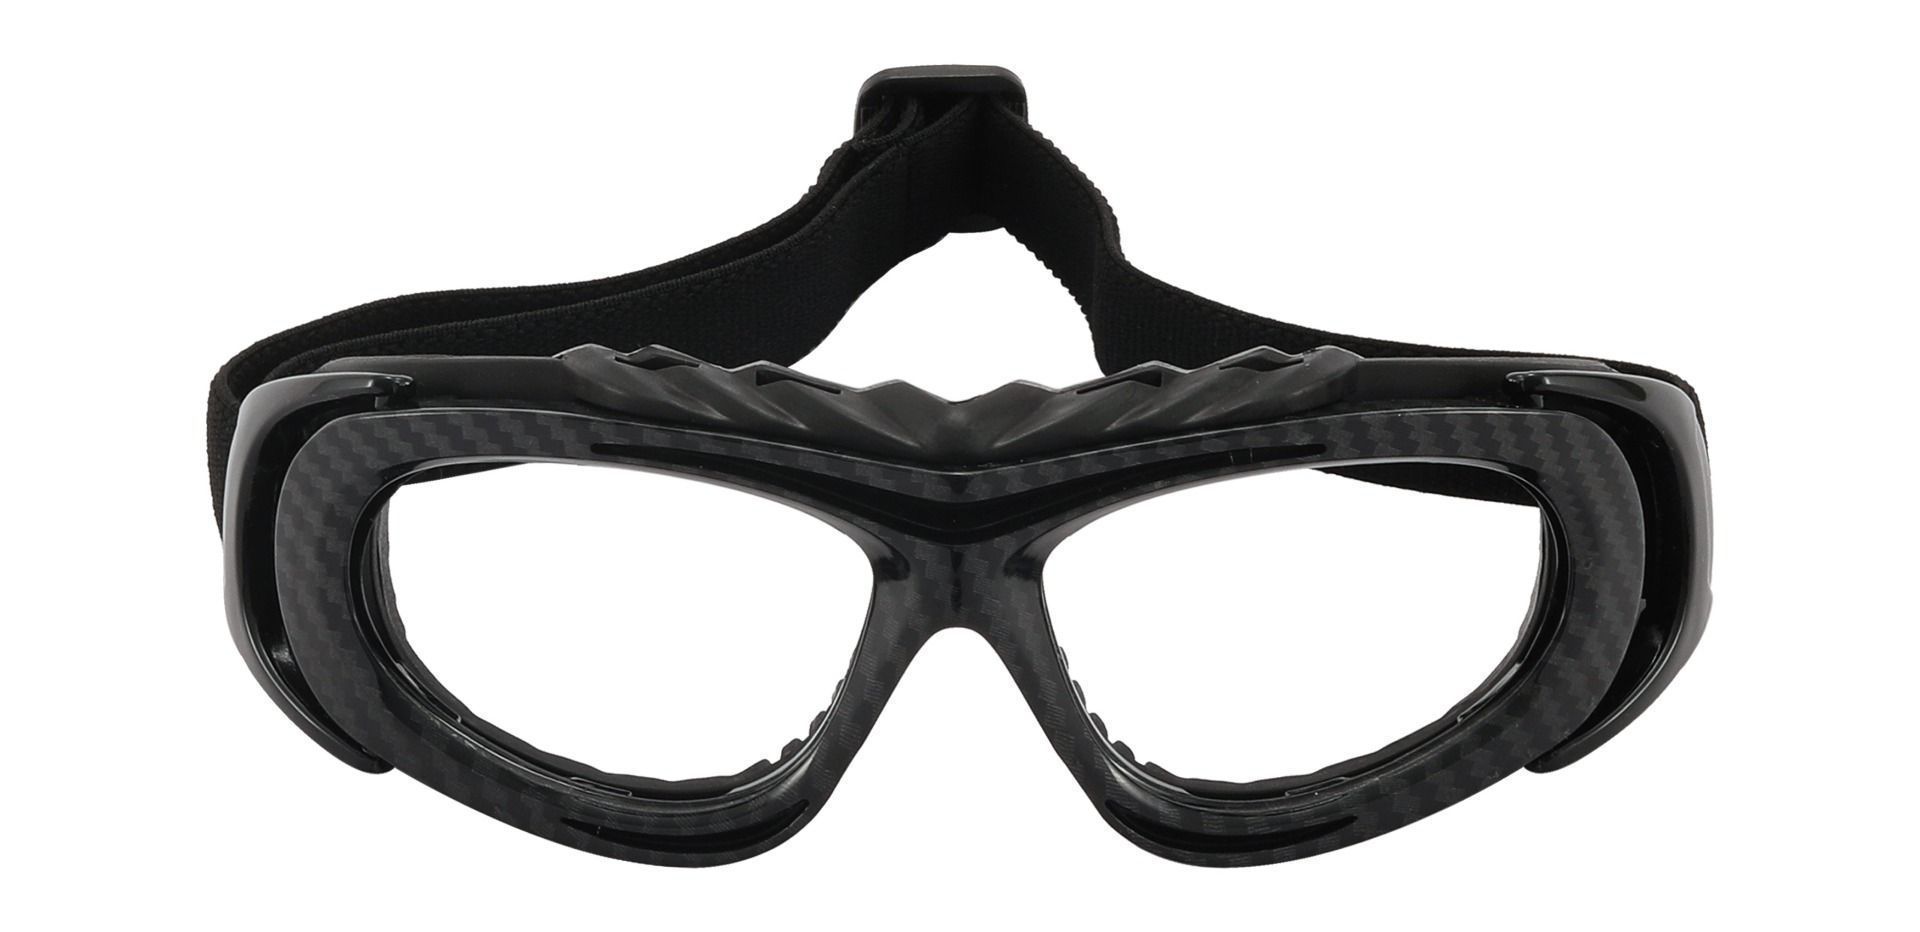 Reston Sports Goggles Prescription Glasses - Black